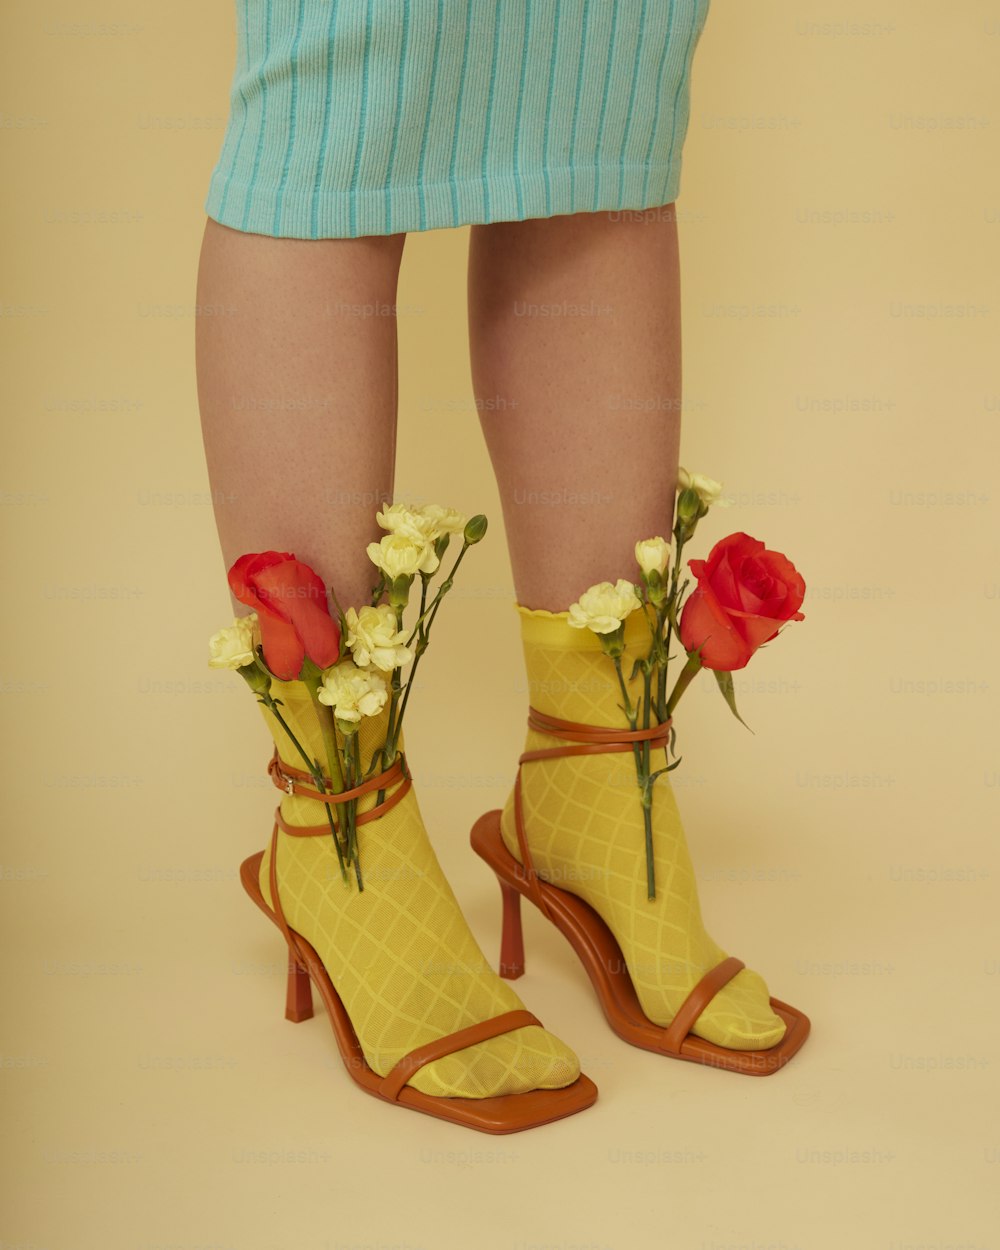 Die Beine einer Frau tragen gelbe Schuhe mit Blumen darin